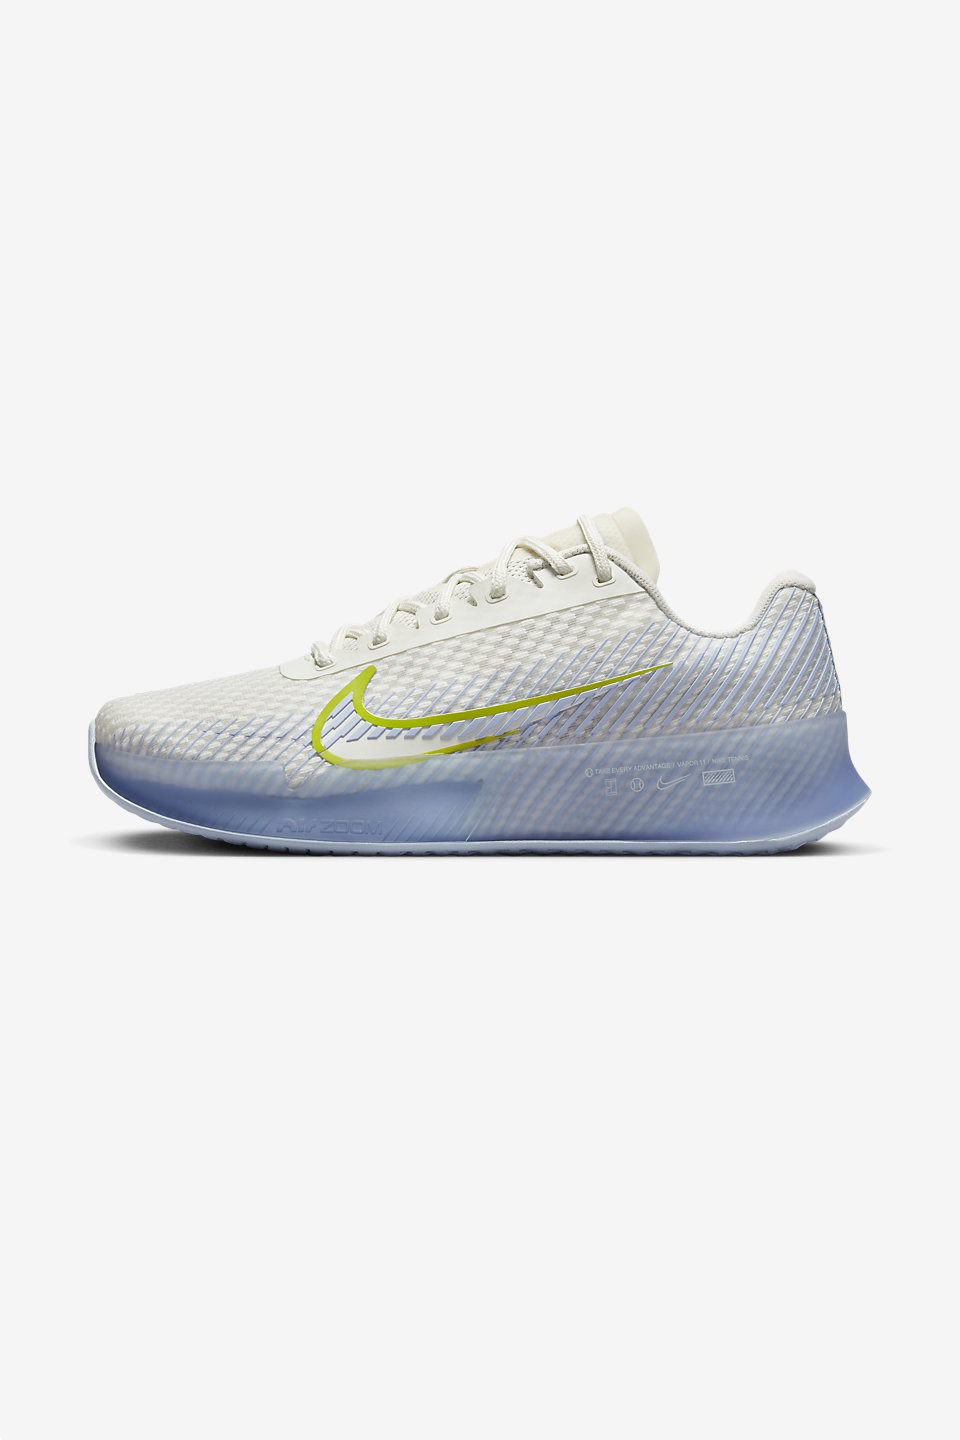 NIKE - NikeCourt Air Zoom Vapor 11 Kadın Tenis Ayakkabısı